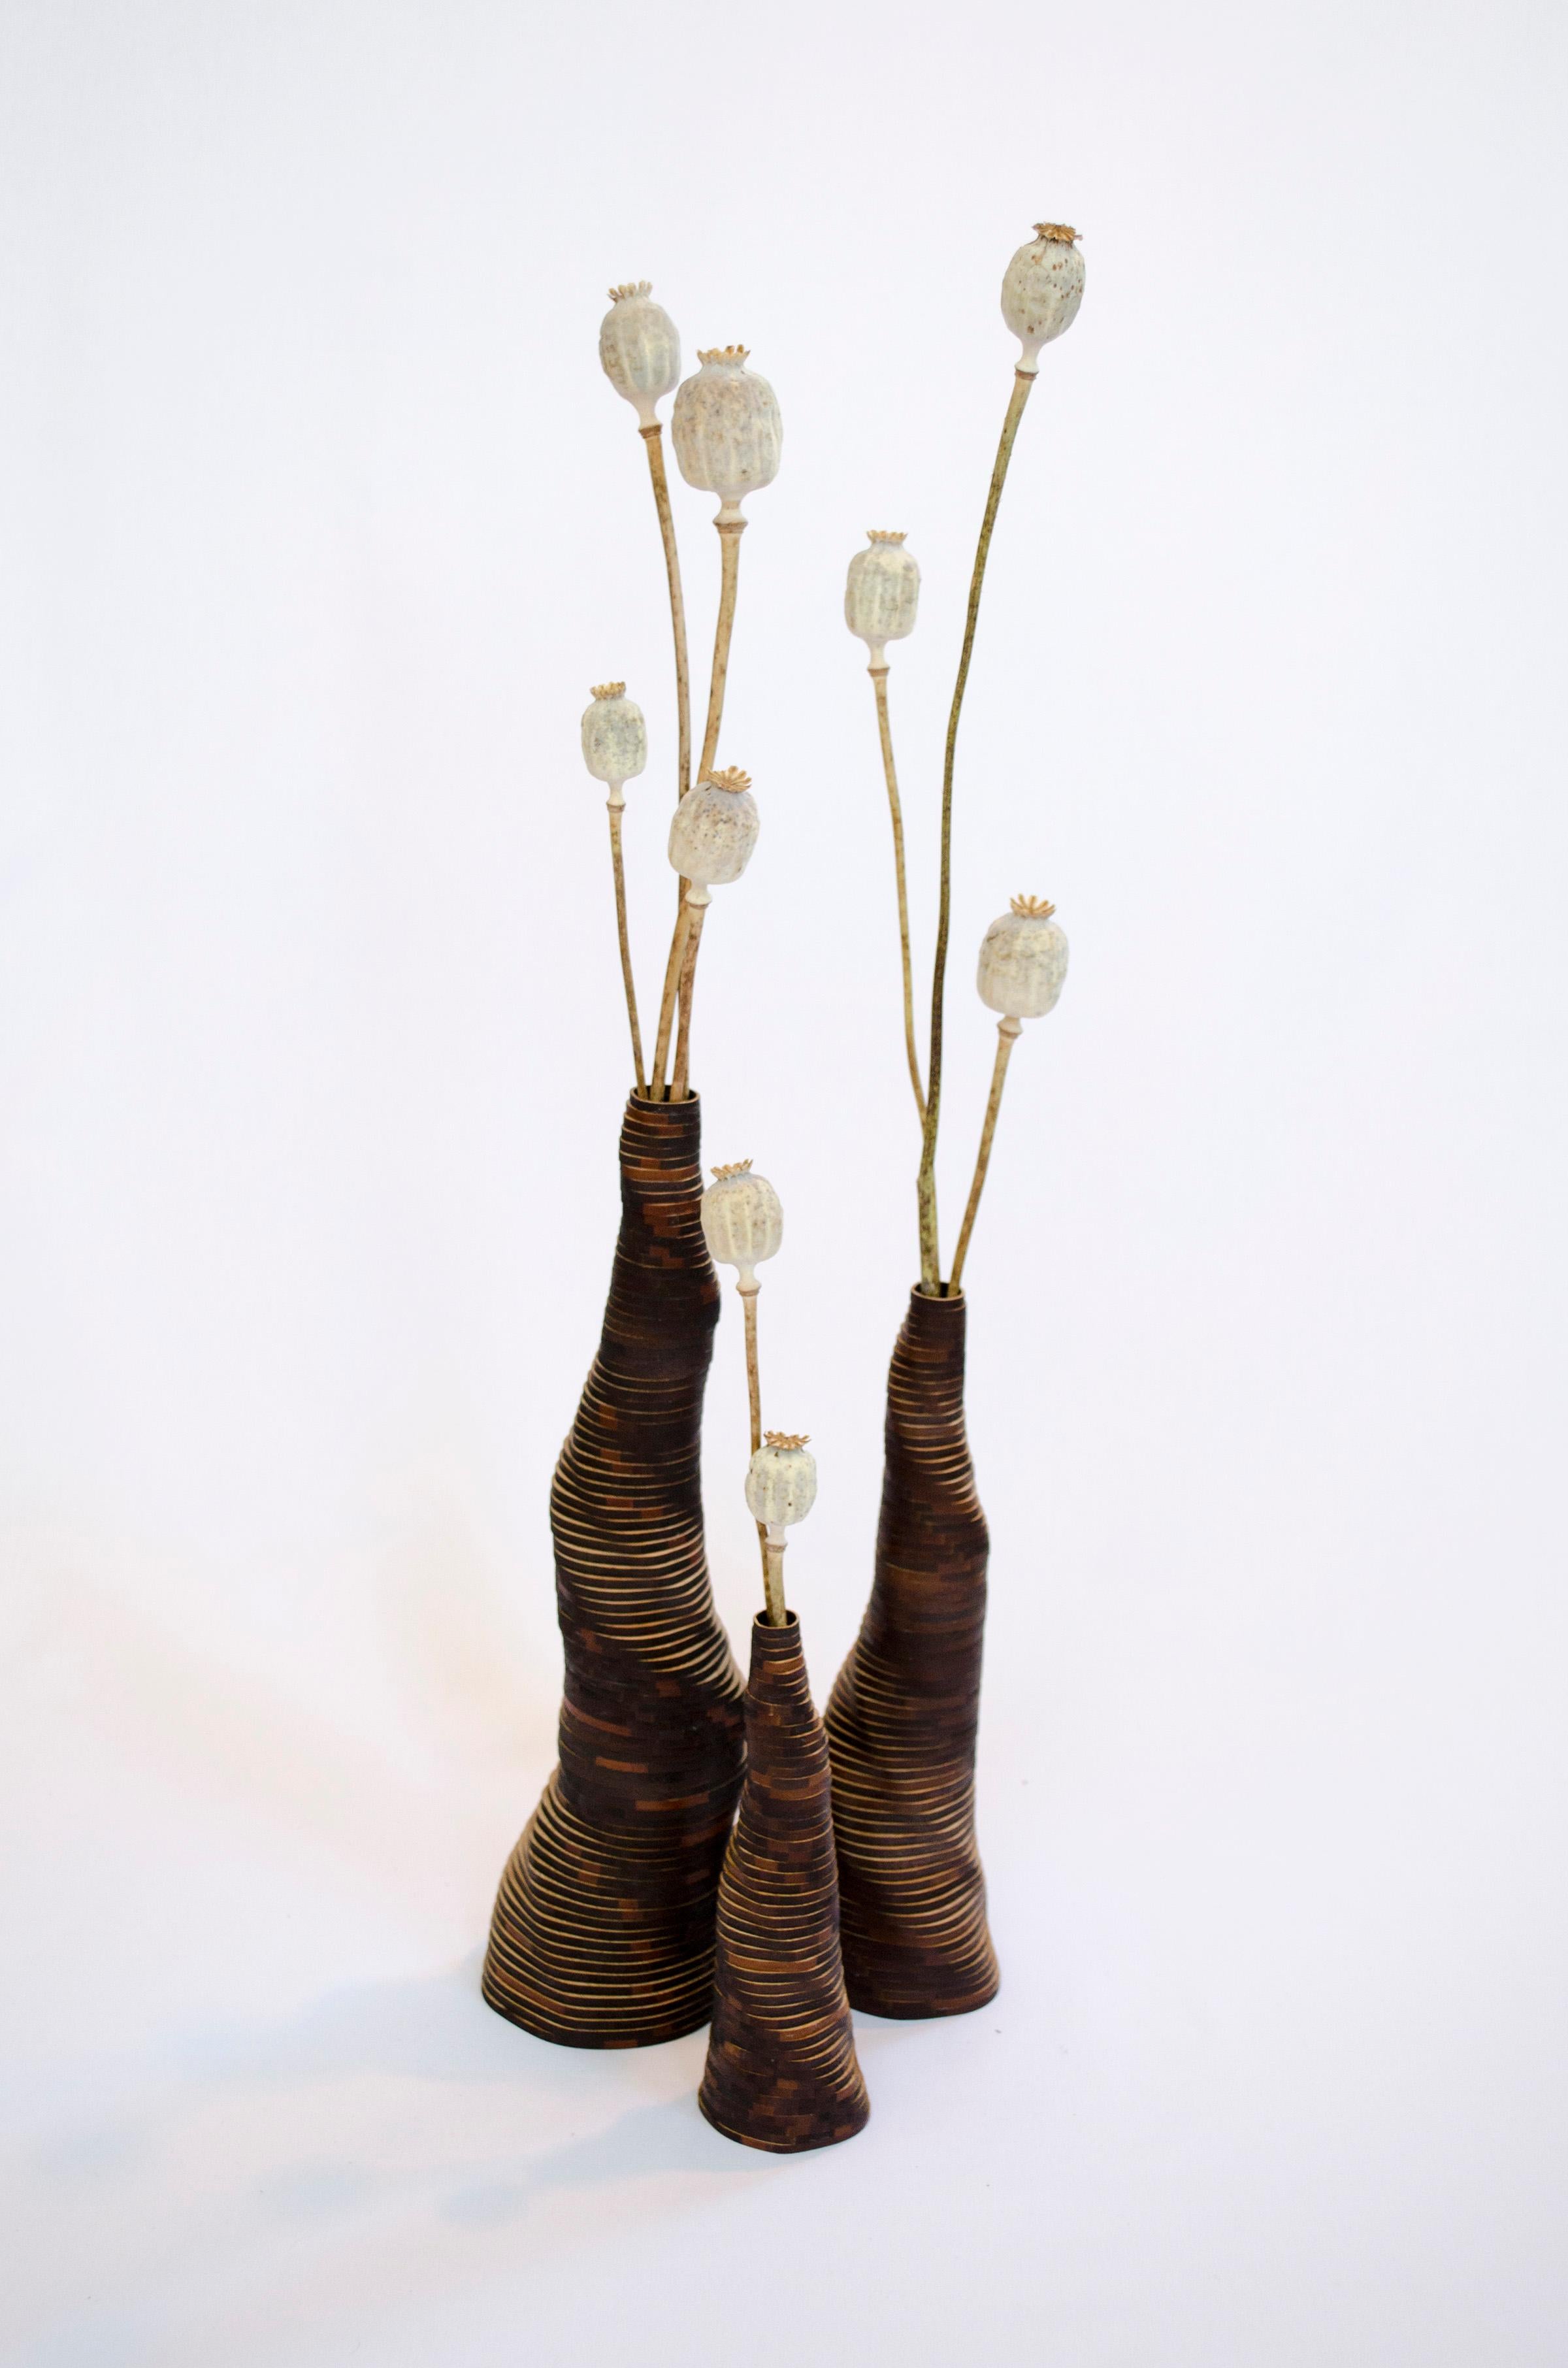 Set von 3 handgefertigten Stratum Tempus-Vasen aus gebranntem Bambus von Daan De Wit
Nummerierte Ausgabe
Abmessungen: D 7,5 x H 28 cm, D 6,5 x H 23 cm, D 5 x H 17 cm.
MATERIALIEN: Bambus.

Inspiriert von Blumen, gemacht für Blumen.
Jedes Stück wird